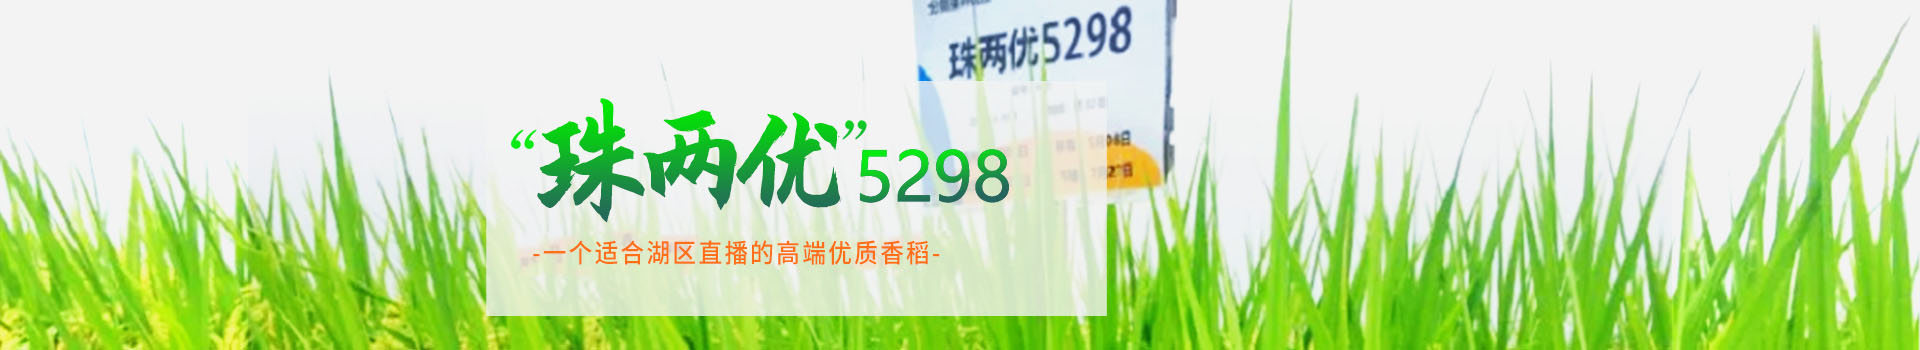 湖南兴隆种业有限公司_长沙稻谷种植与销售|长沙农作物品种的选育